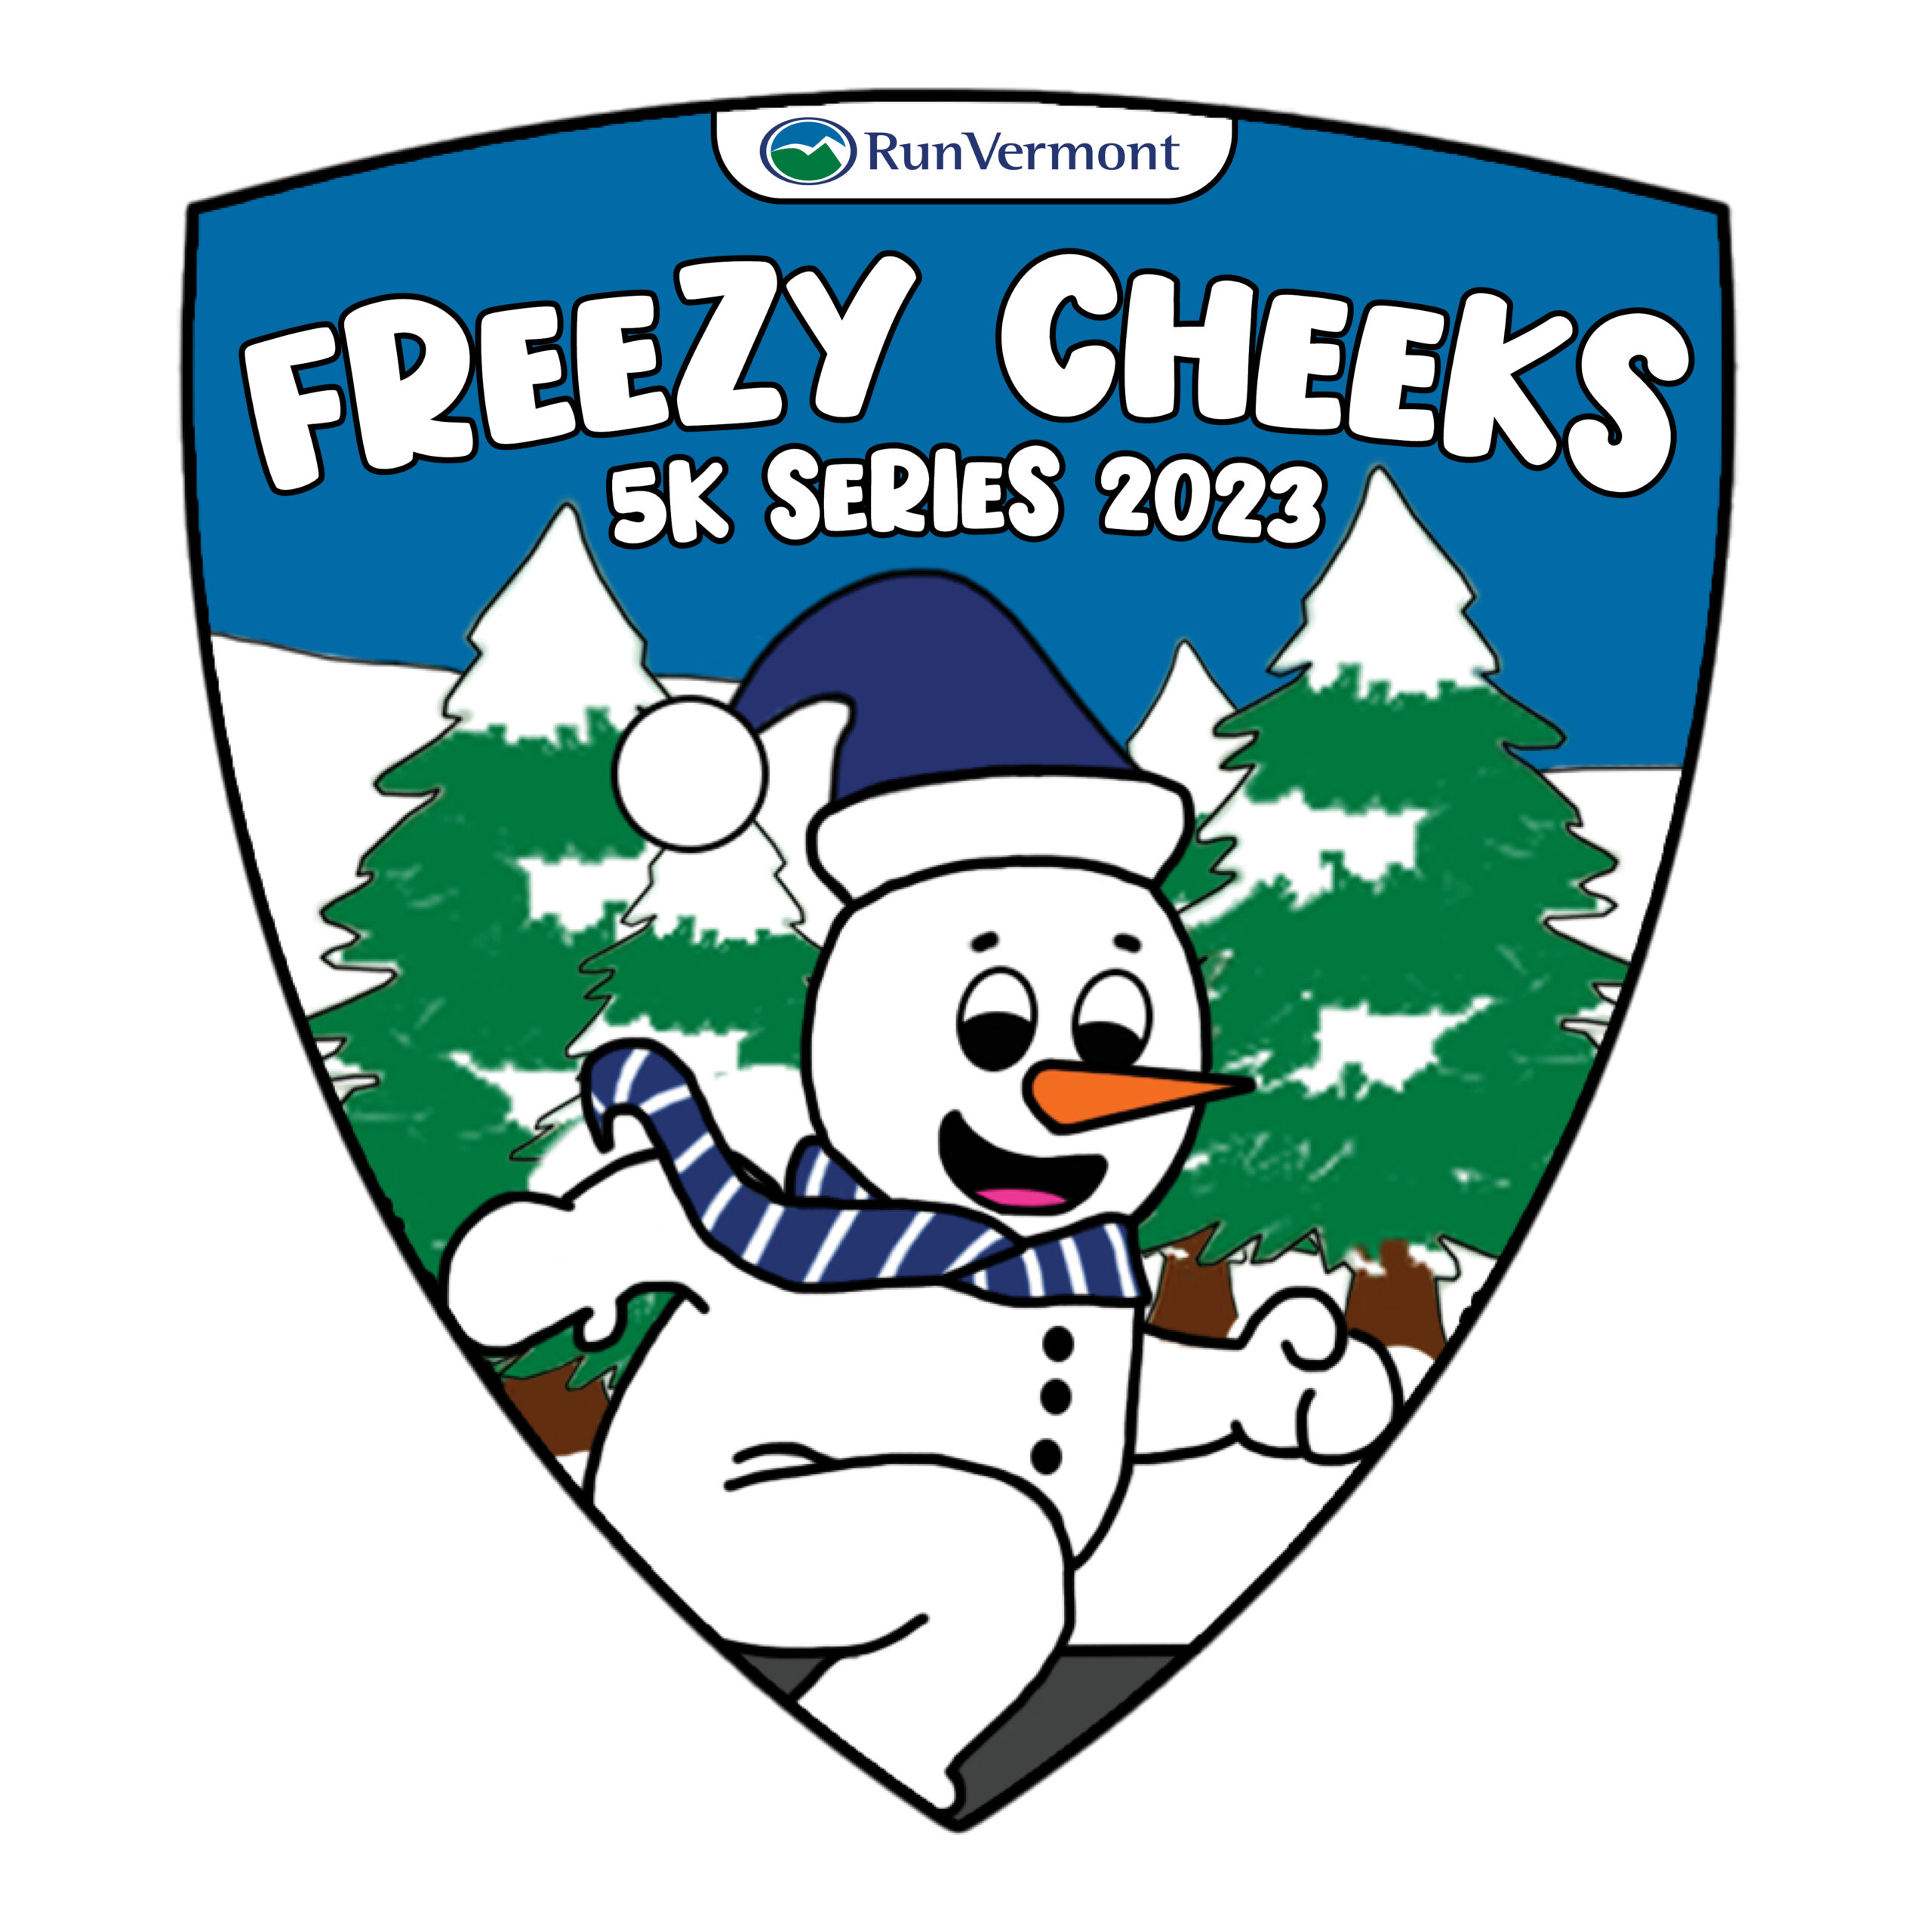 Freezy Cheeks 5K: Third Berg logo on RaceRaves